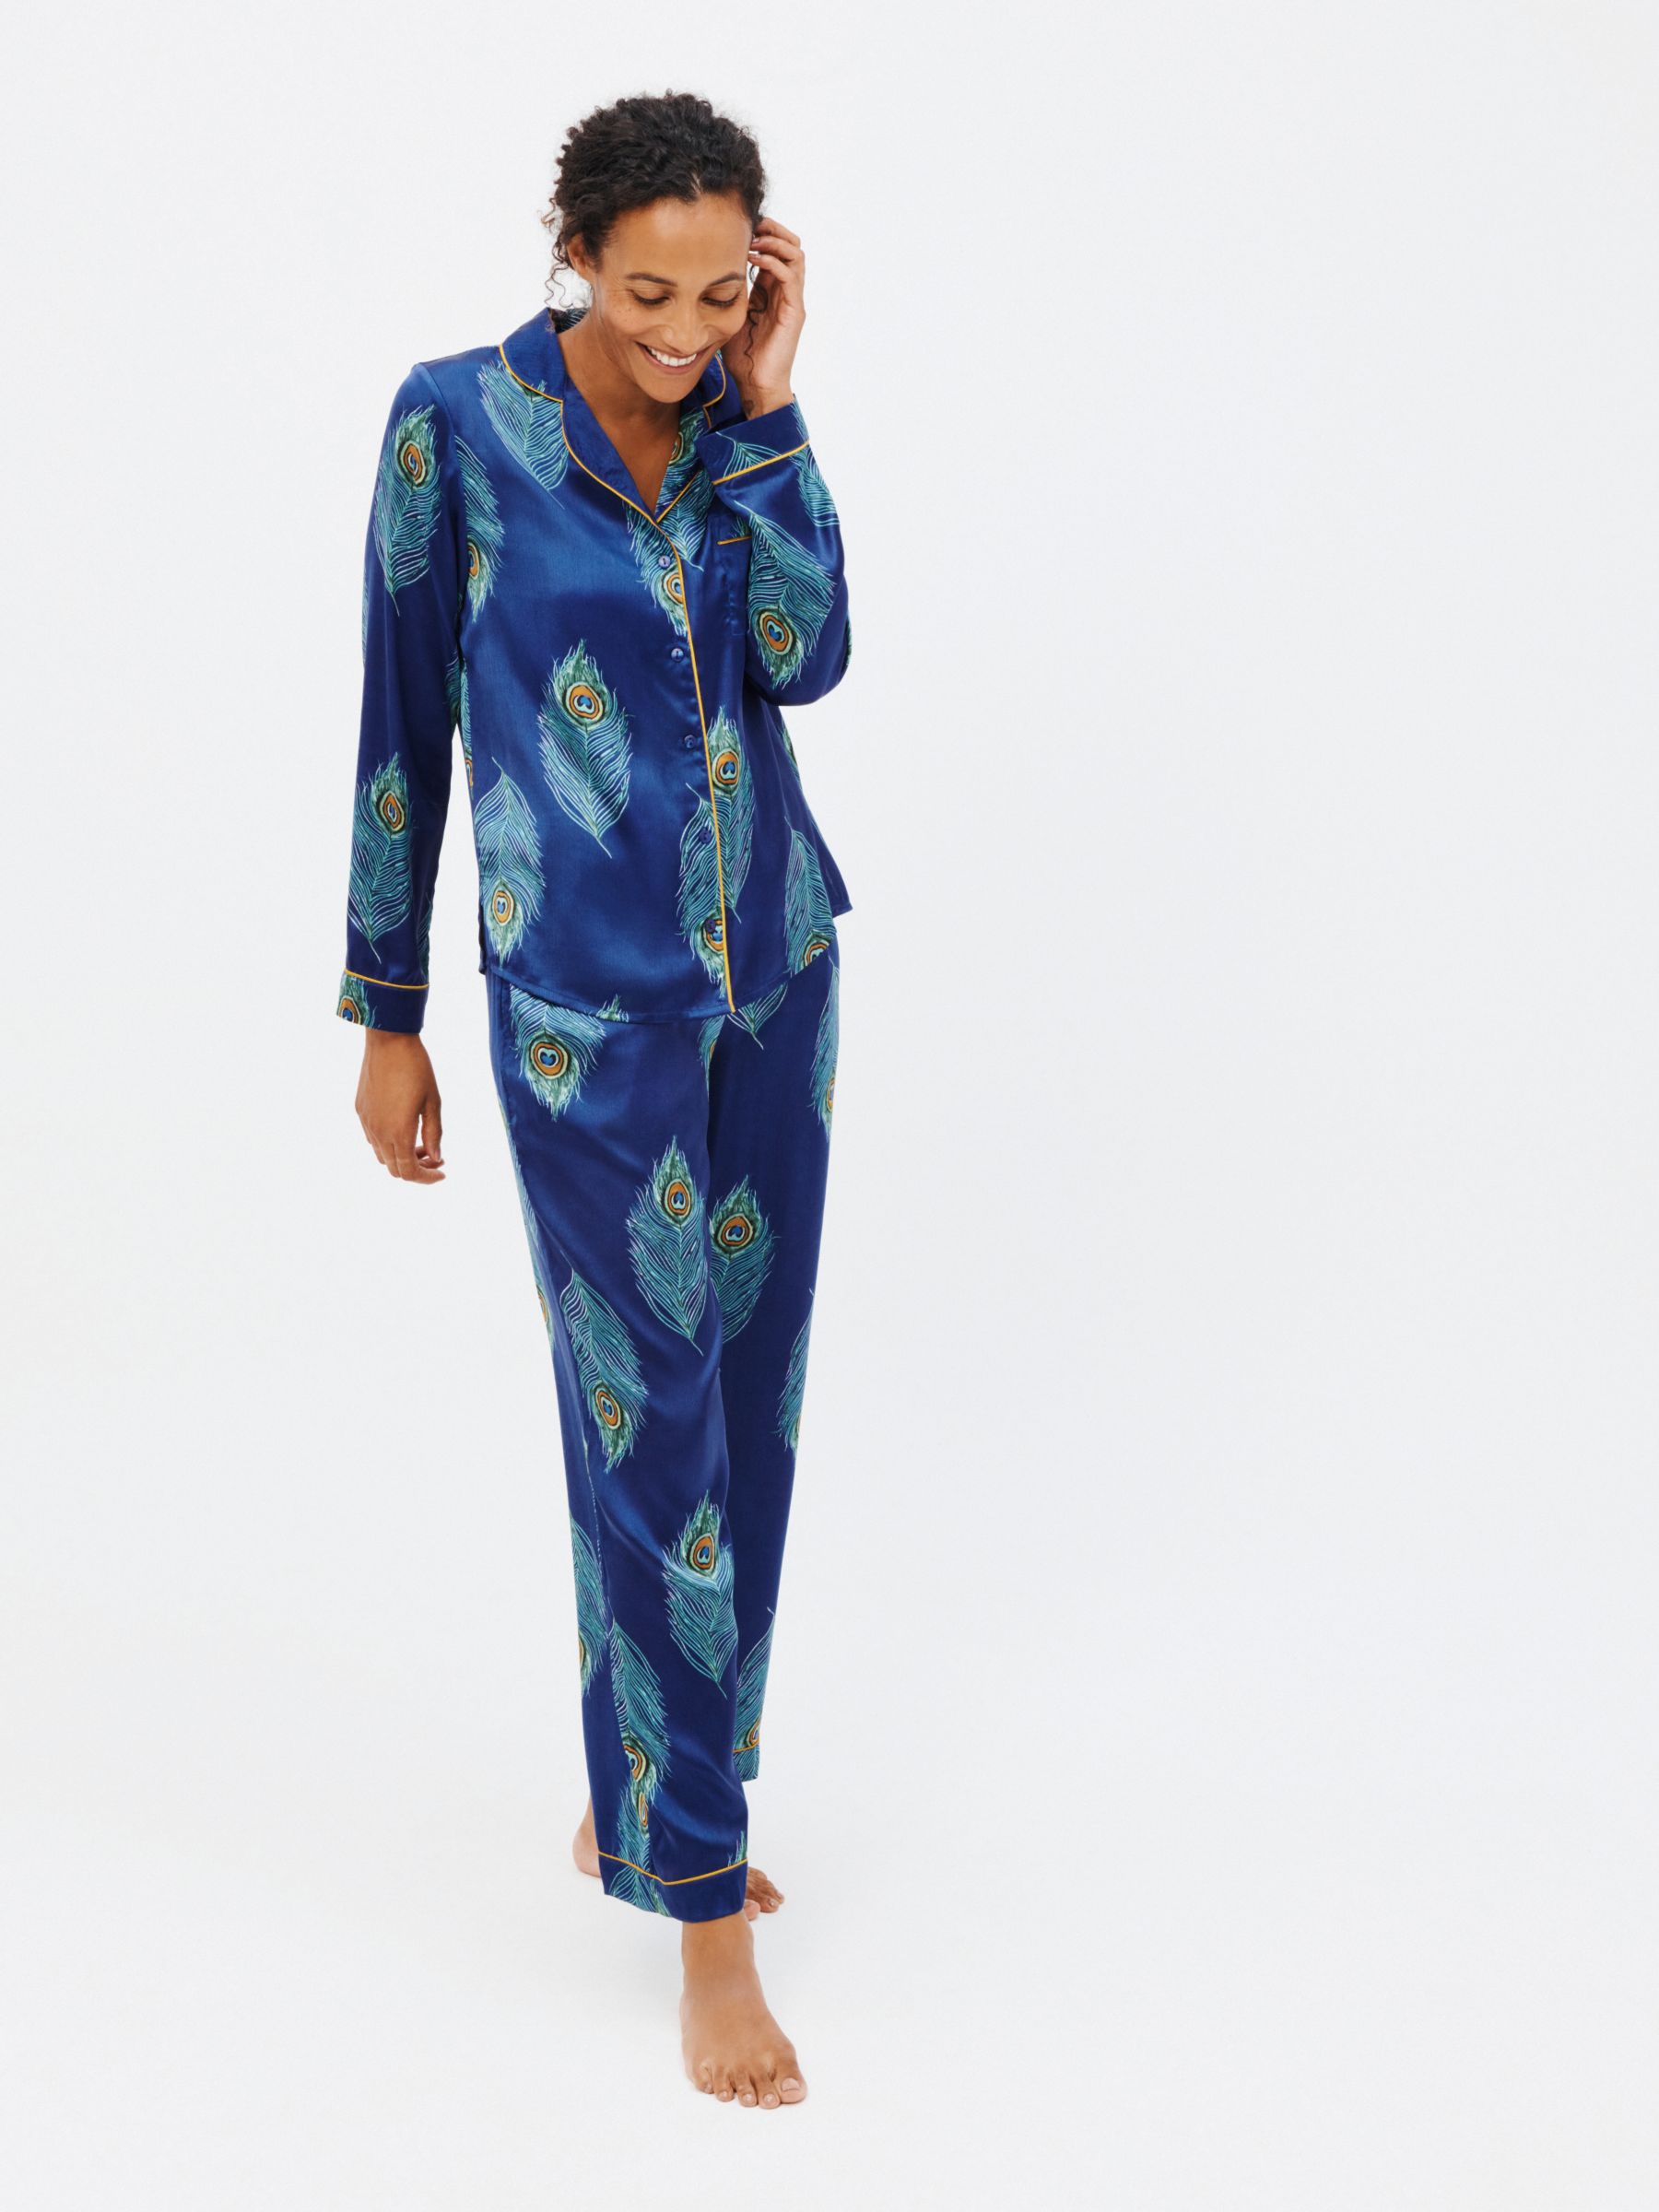 Satin Nightwear For Women - Buy Satin Nightwear For Women online